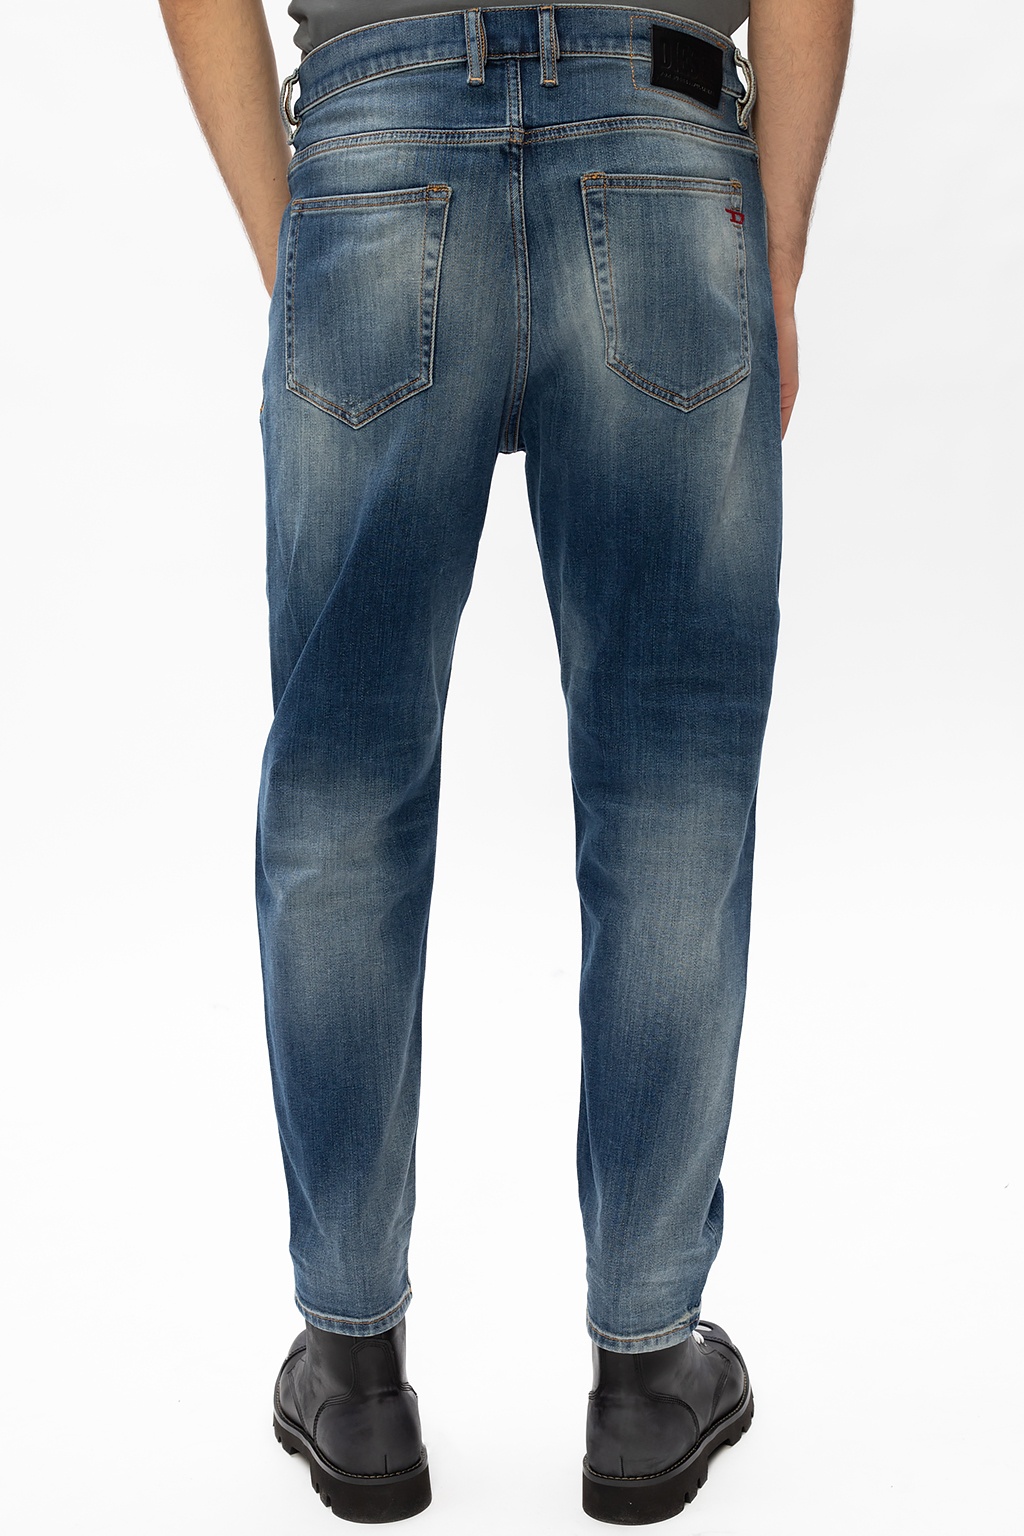 Diesel ‘D-Vider’ distressed jeans